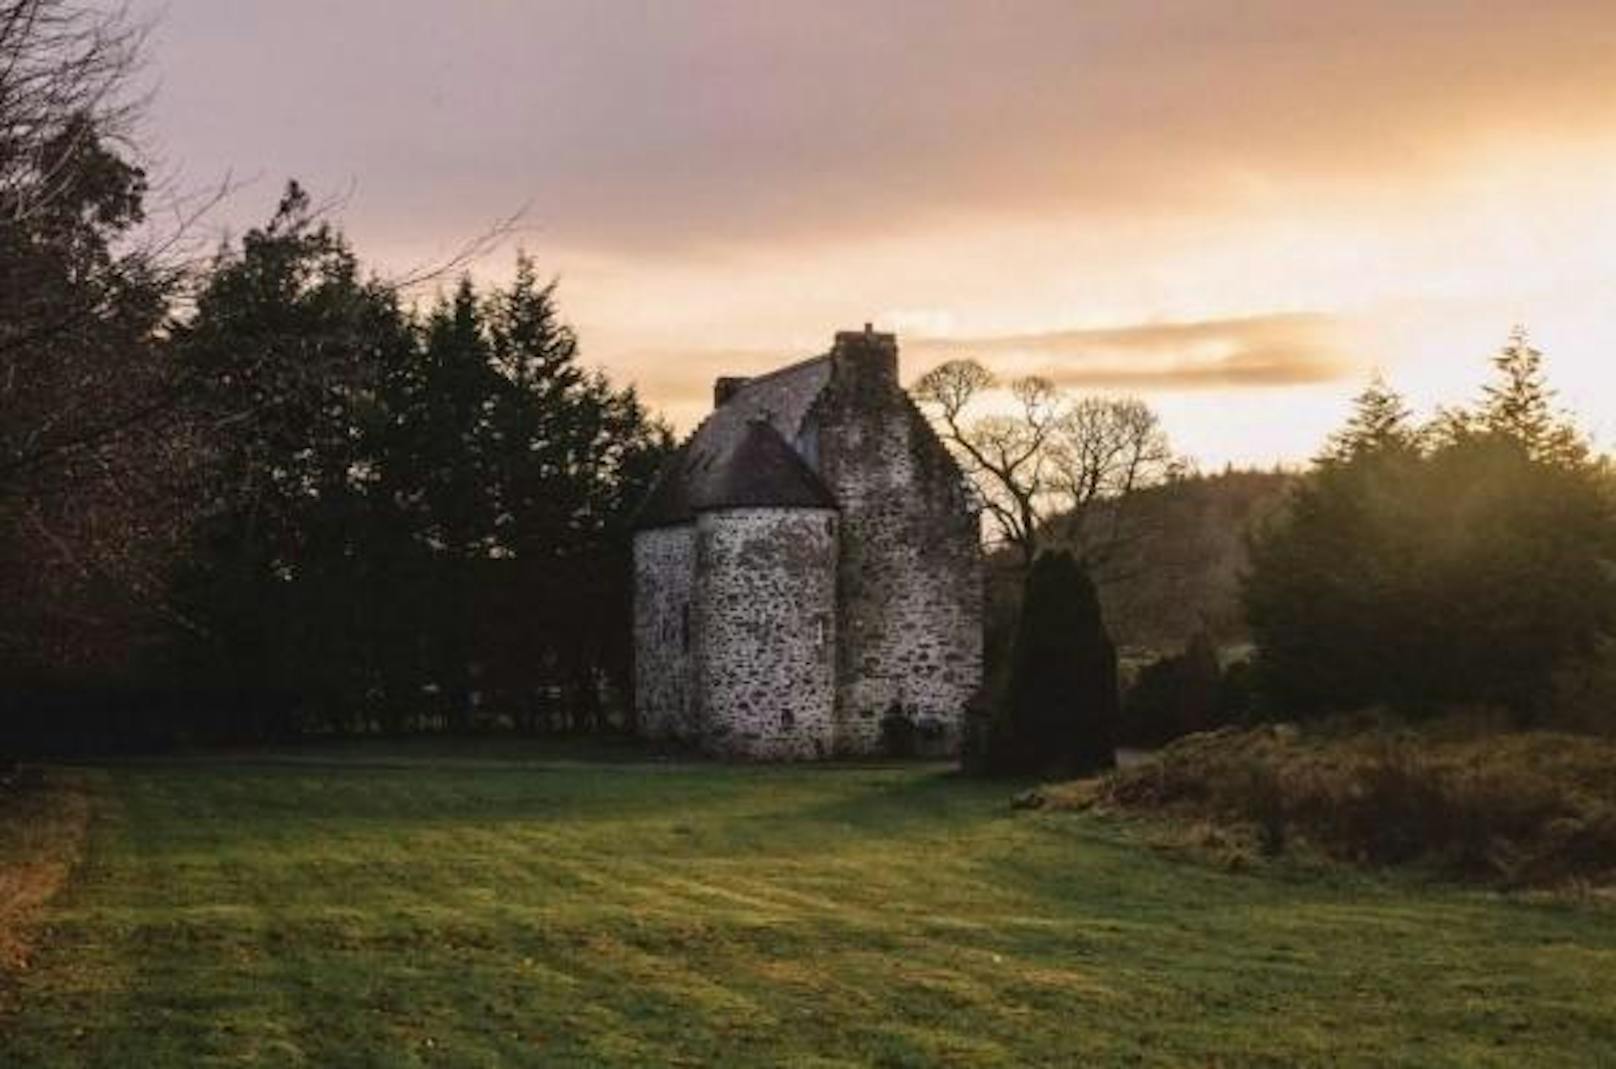 <b>Kilmartin Castle, Argyll and Bute, Schottland</b>
Das Kilmartin Castle war viele Jahre die Heimat des schottischen Clan Campbell. Wer hier übernachtet, wohnt wie vor 200 Jahren.